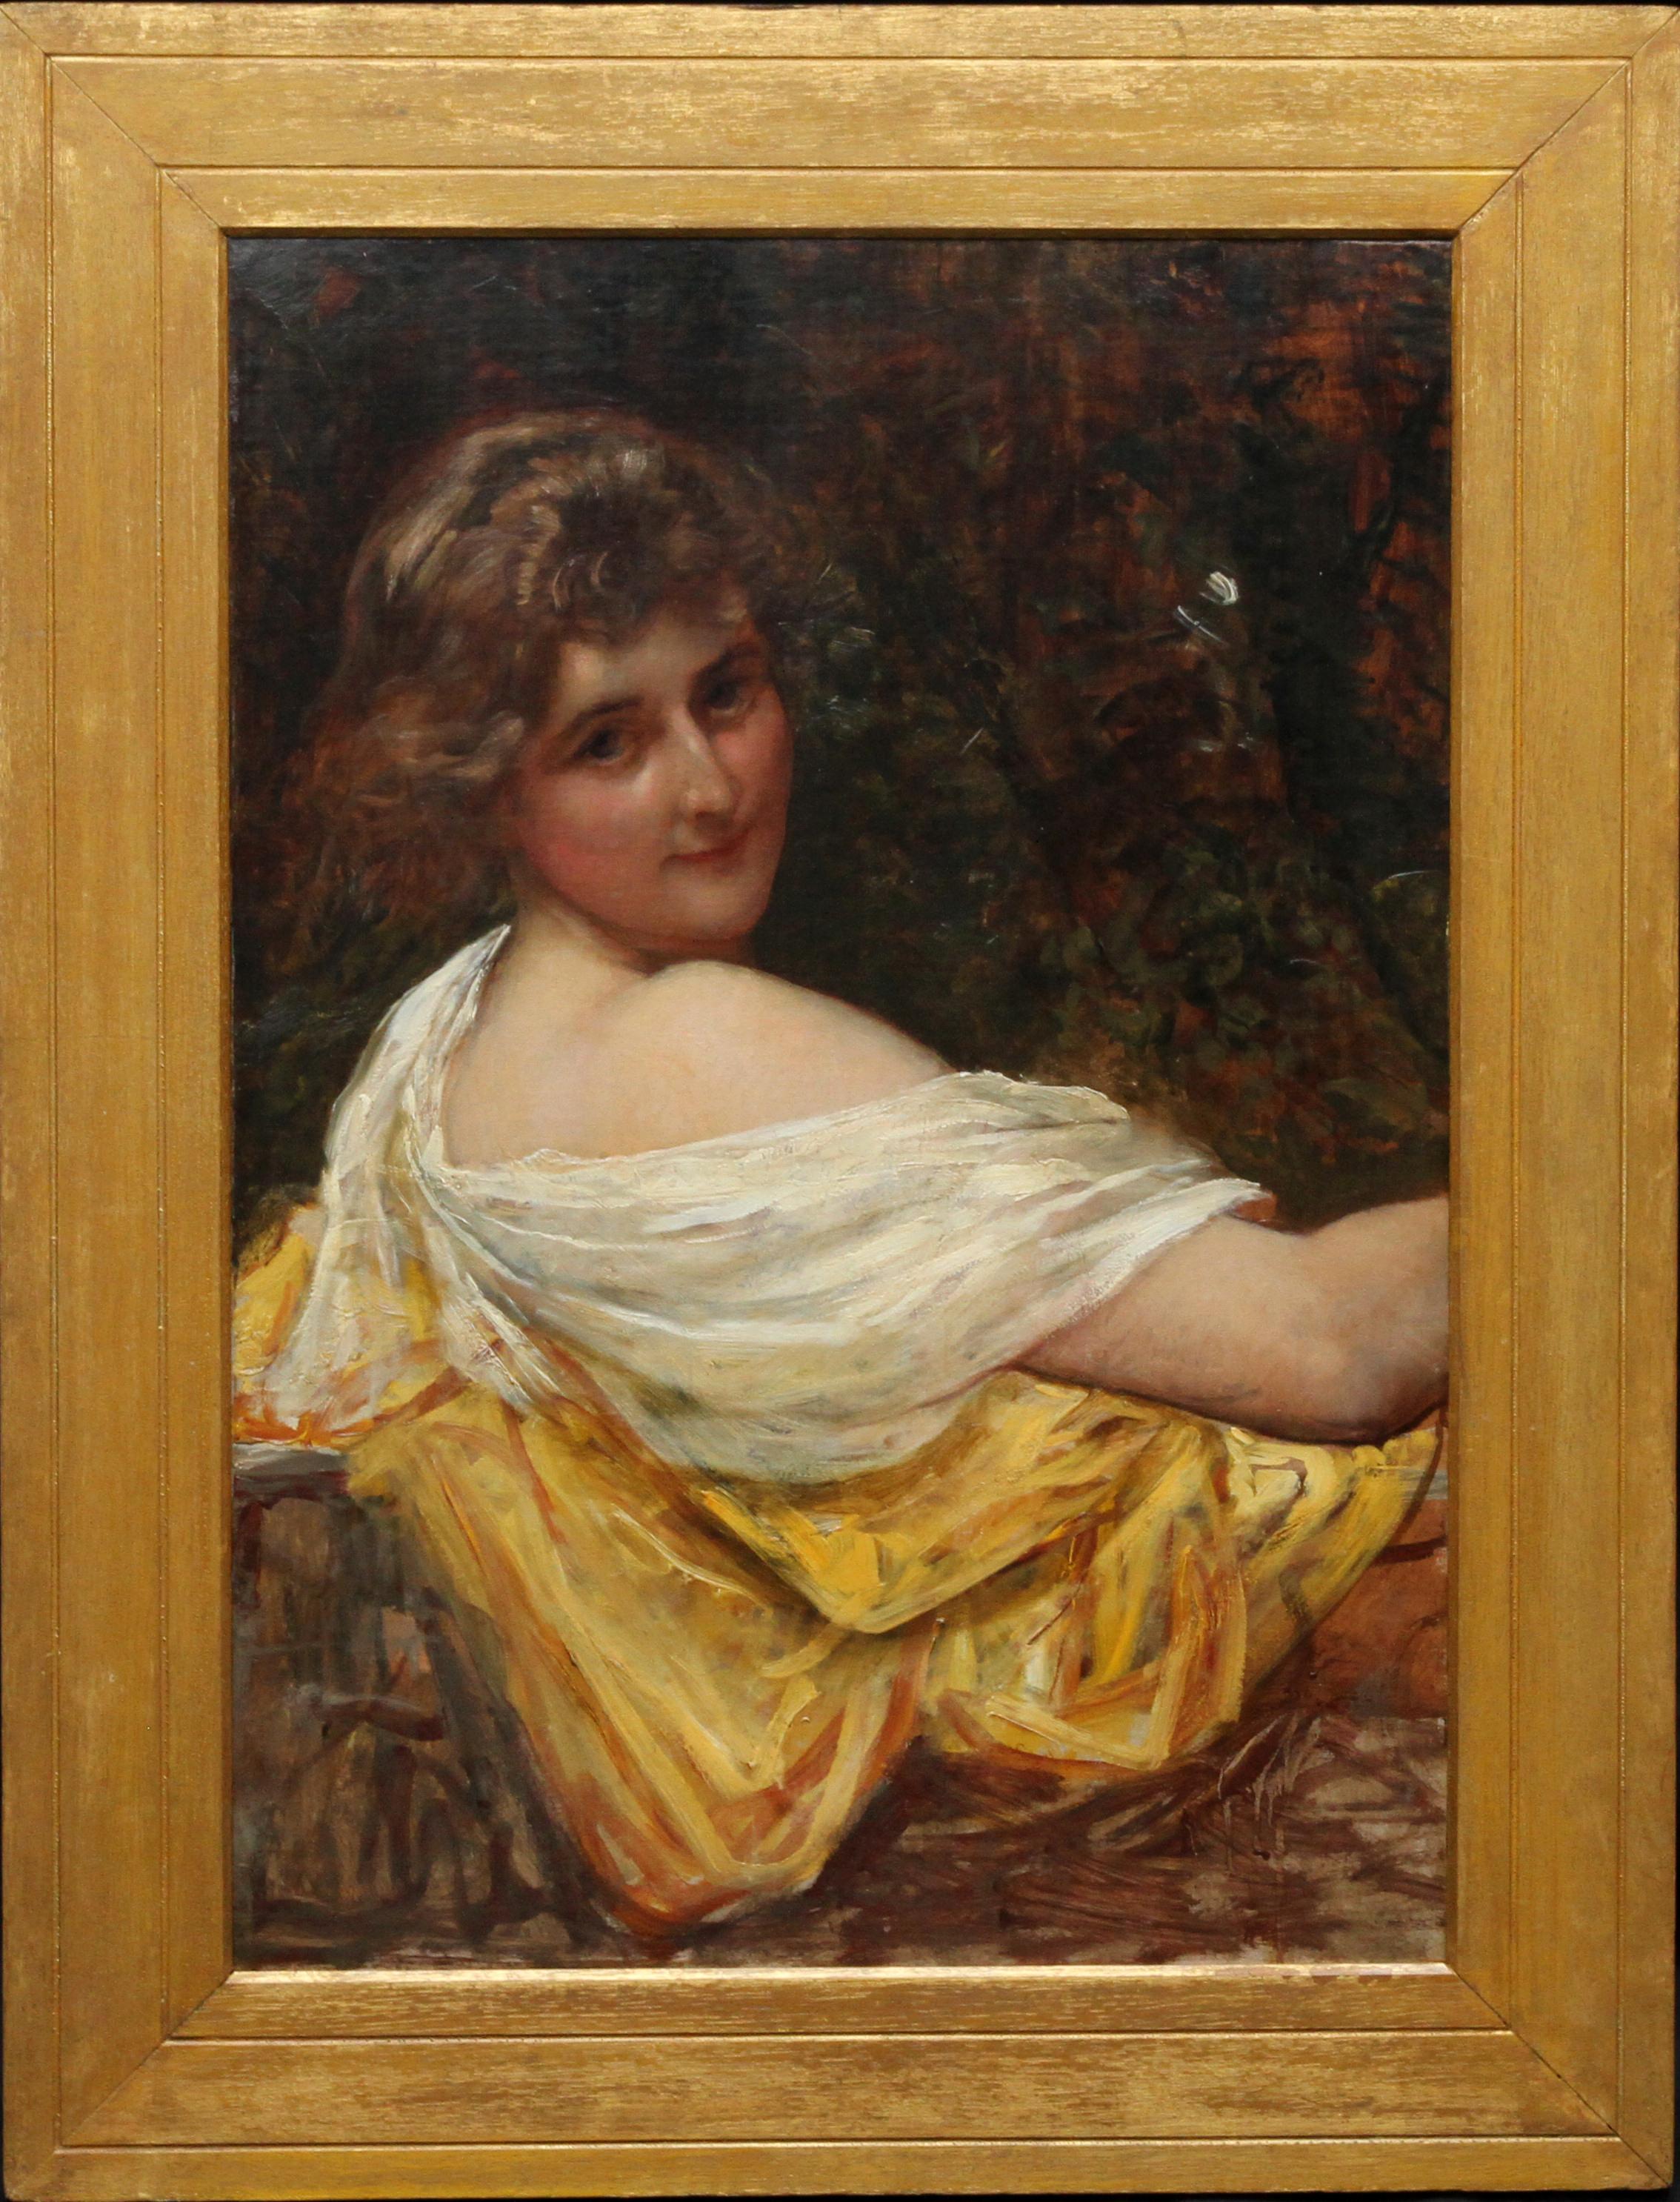 Sir William Blake Richmond Portrait Painting – Porträt einer jungen Dame in einem gelben Kleid – britisches viktorianisches Ölgemälde 